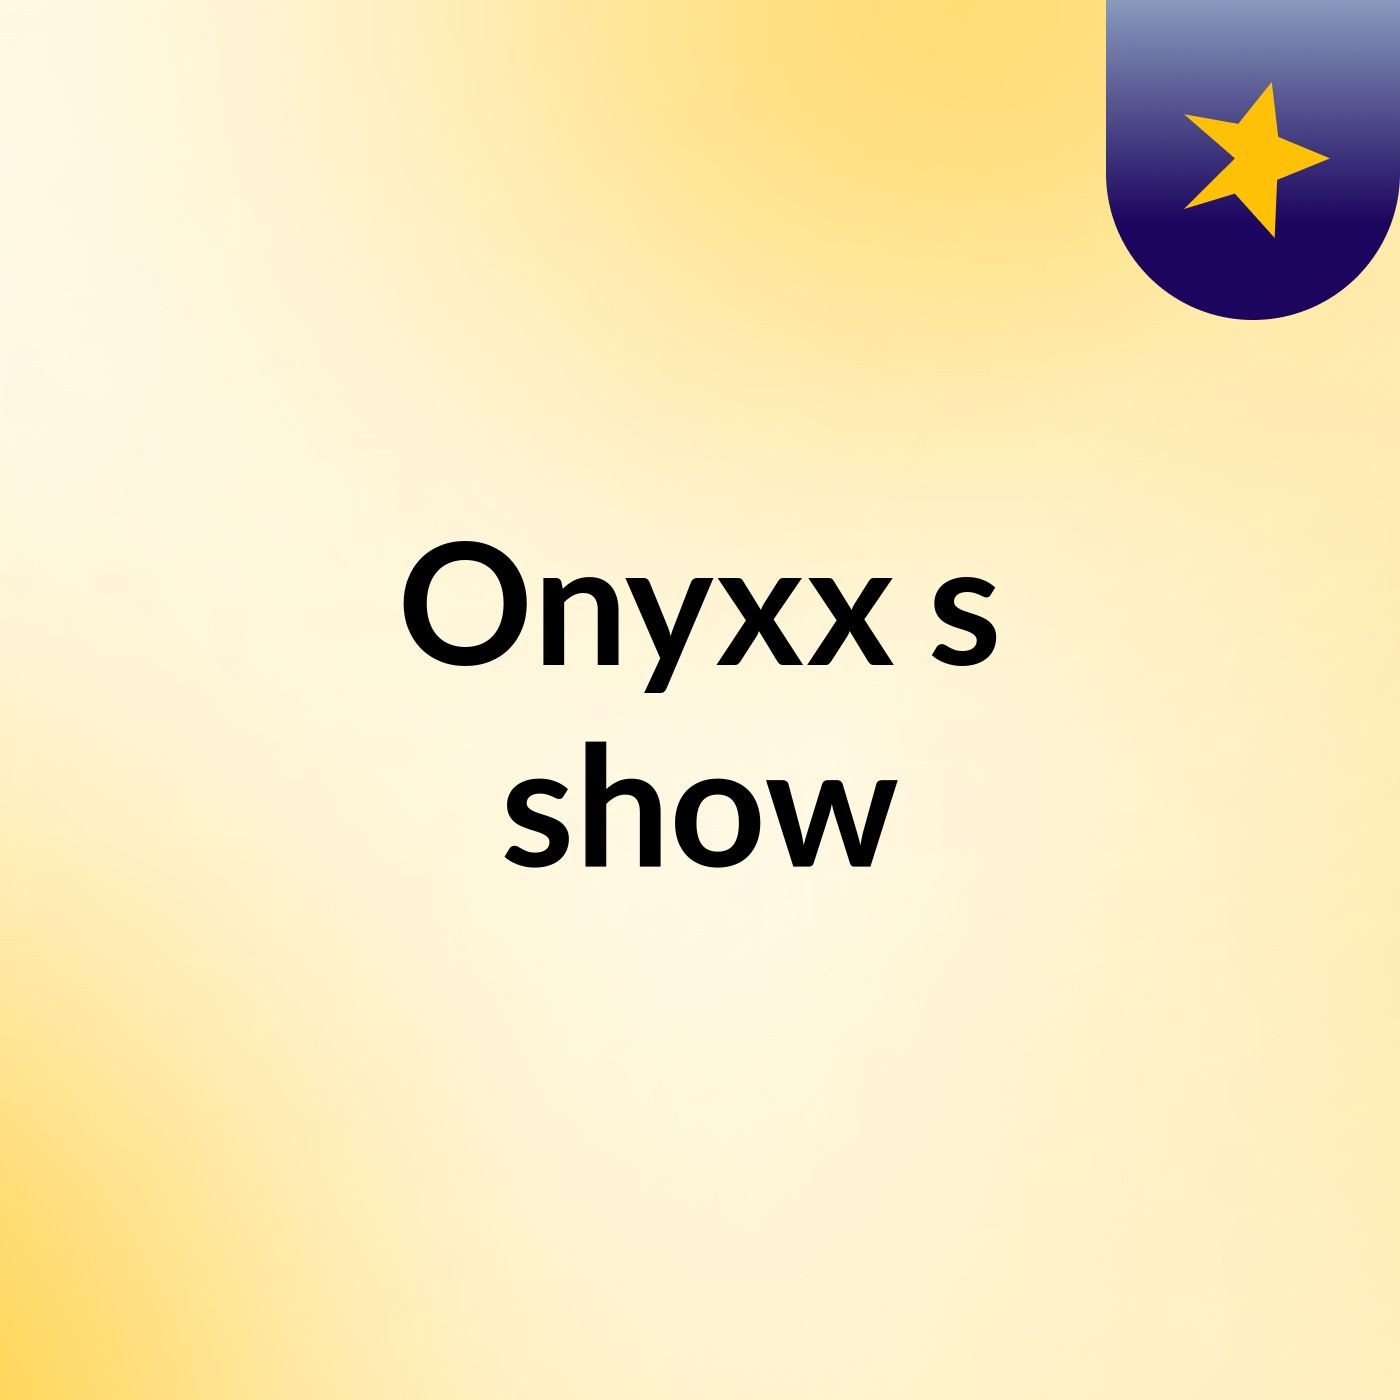 Onyxx's show